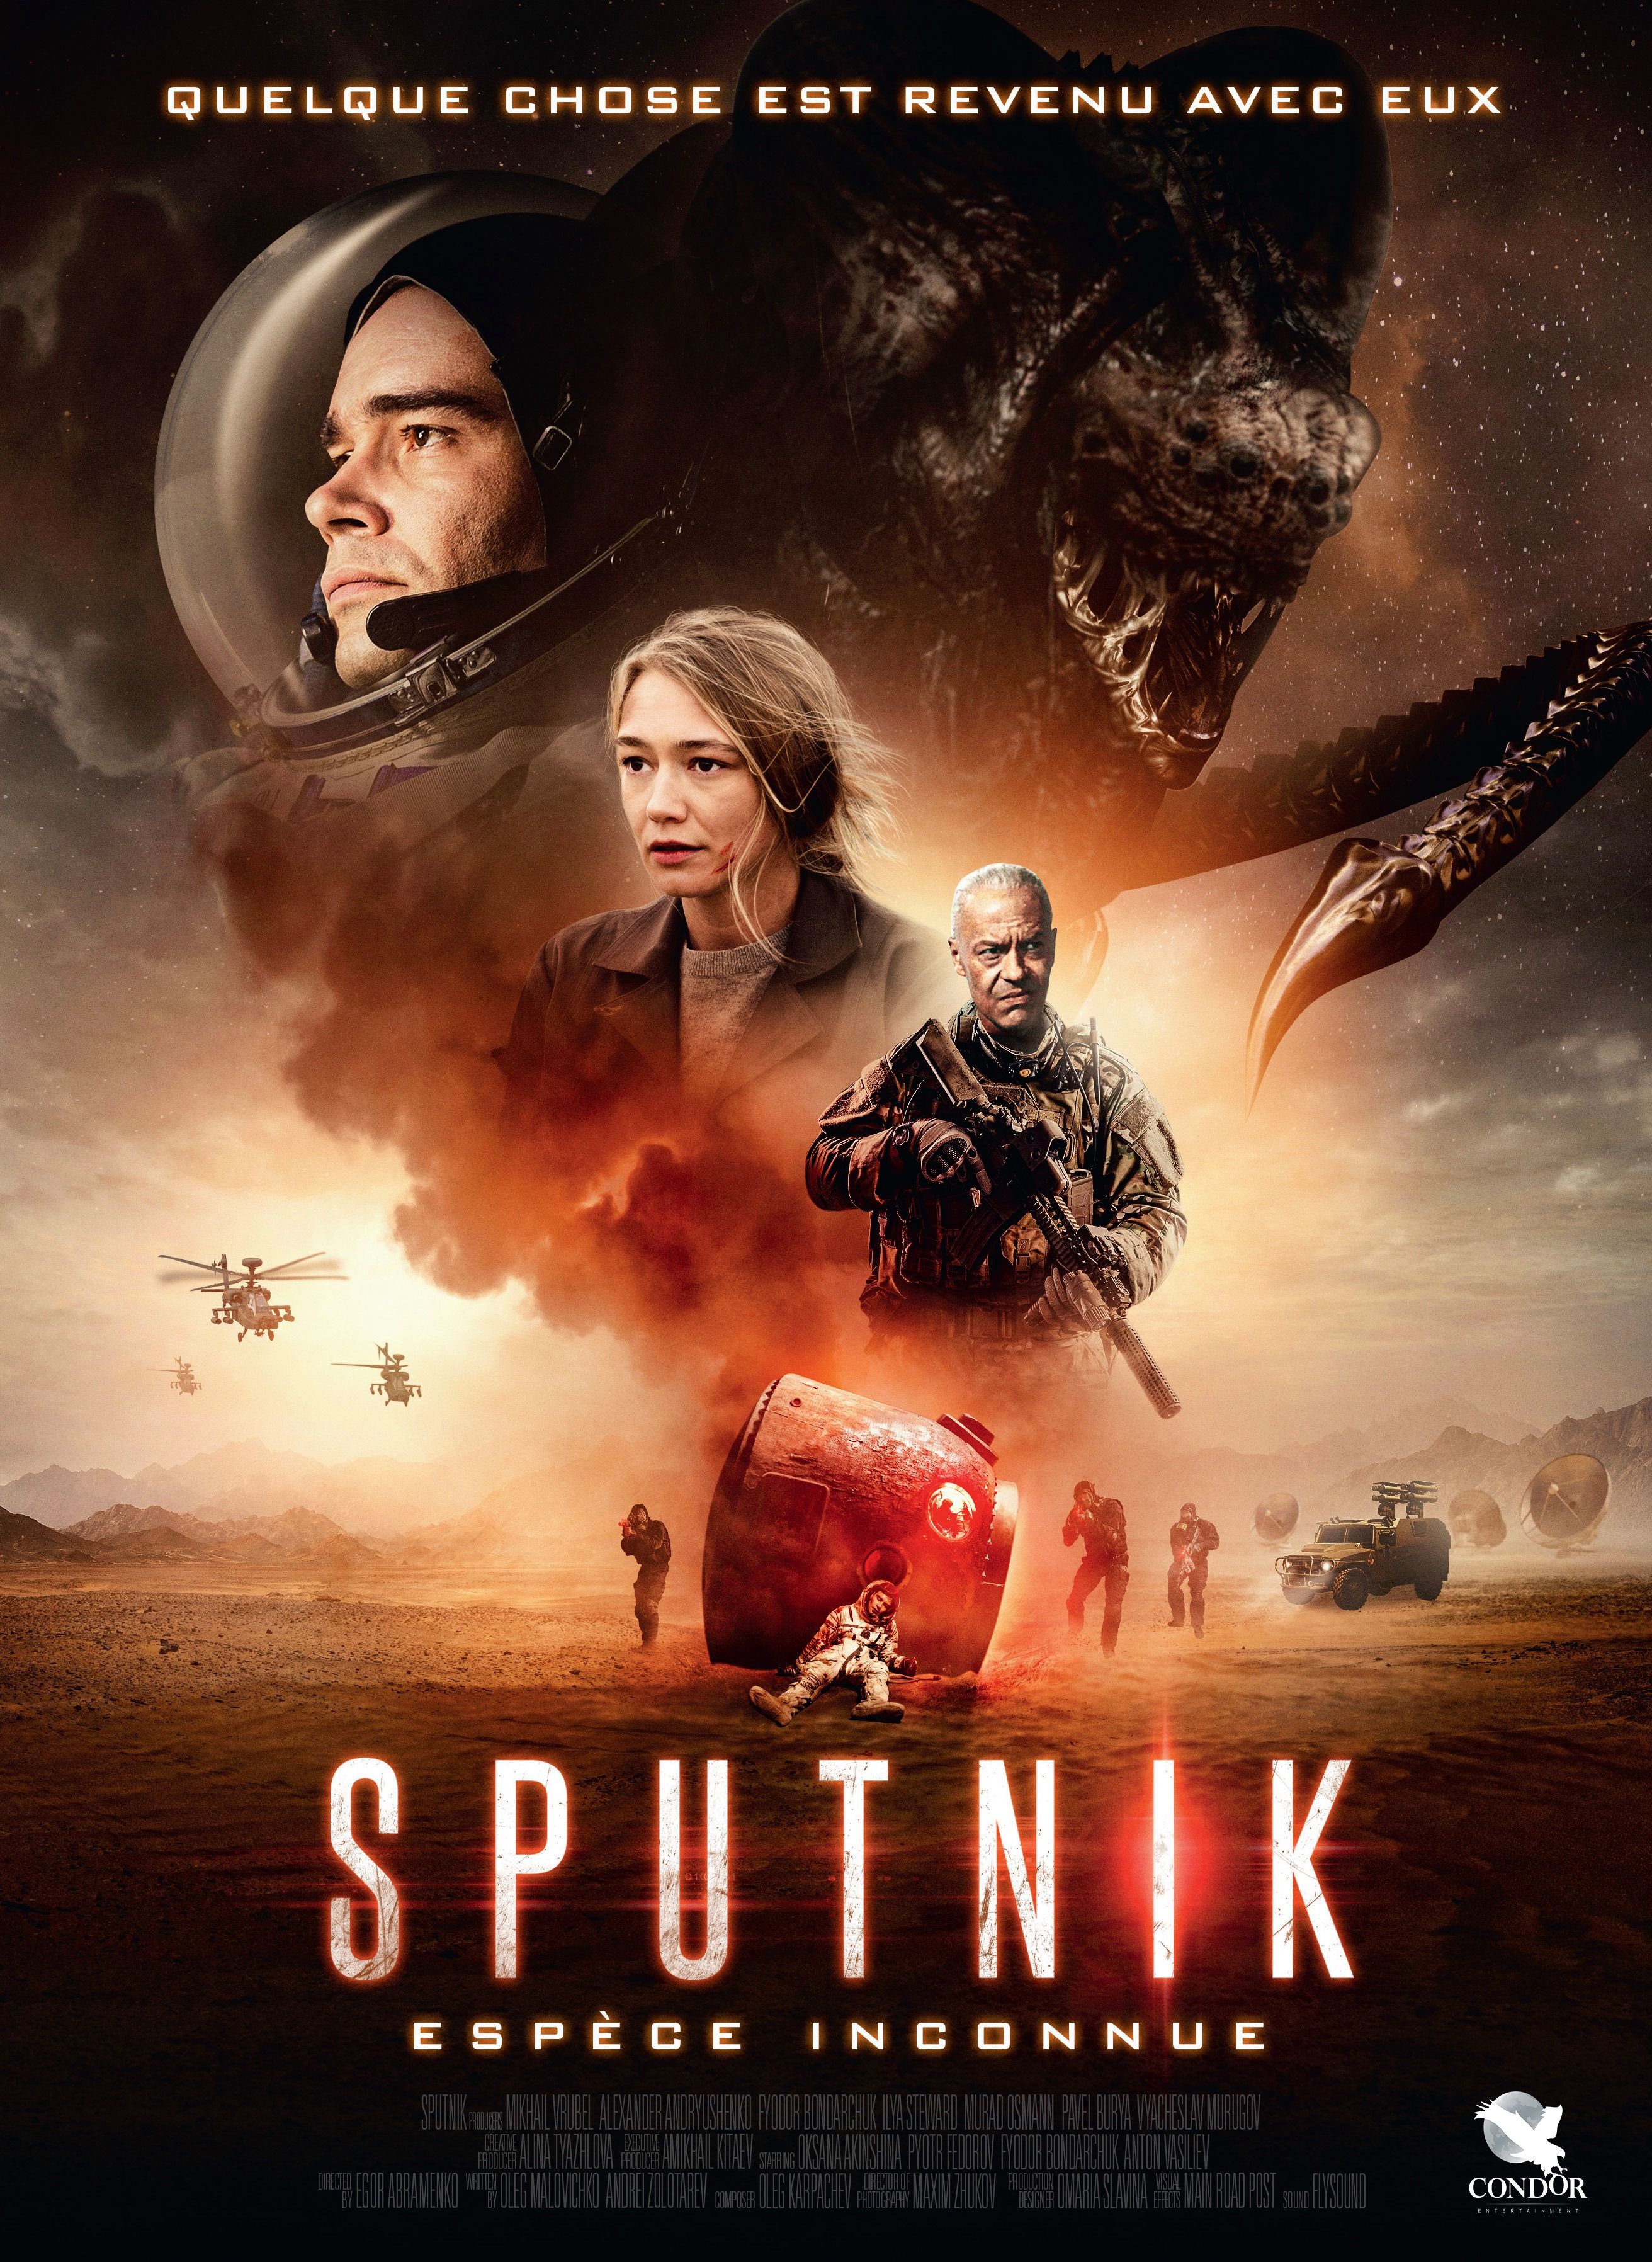 Error en Promo de Sputnik